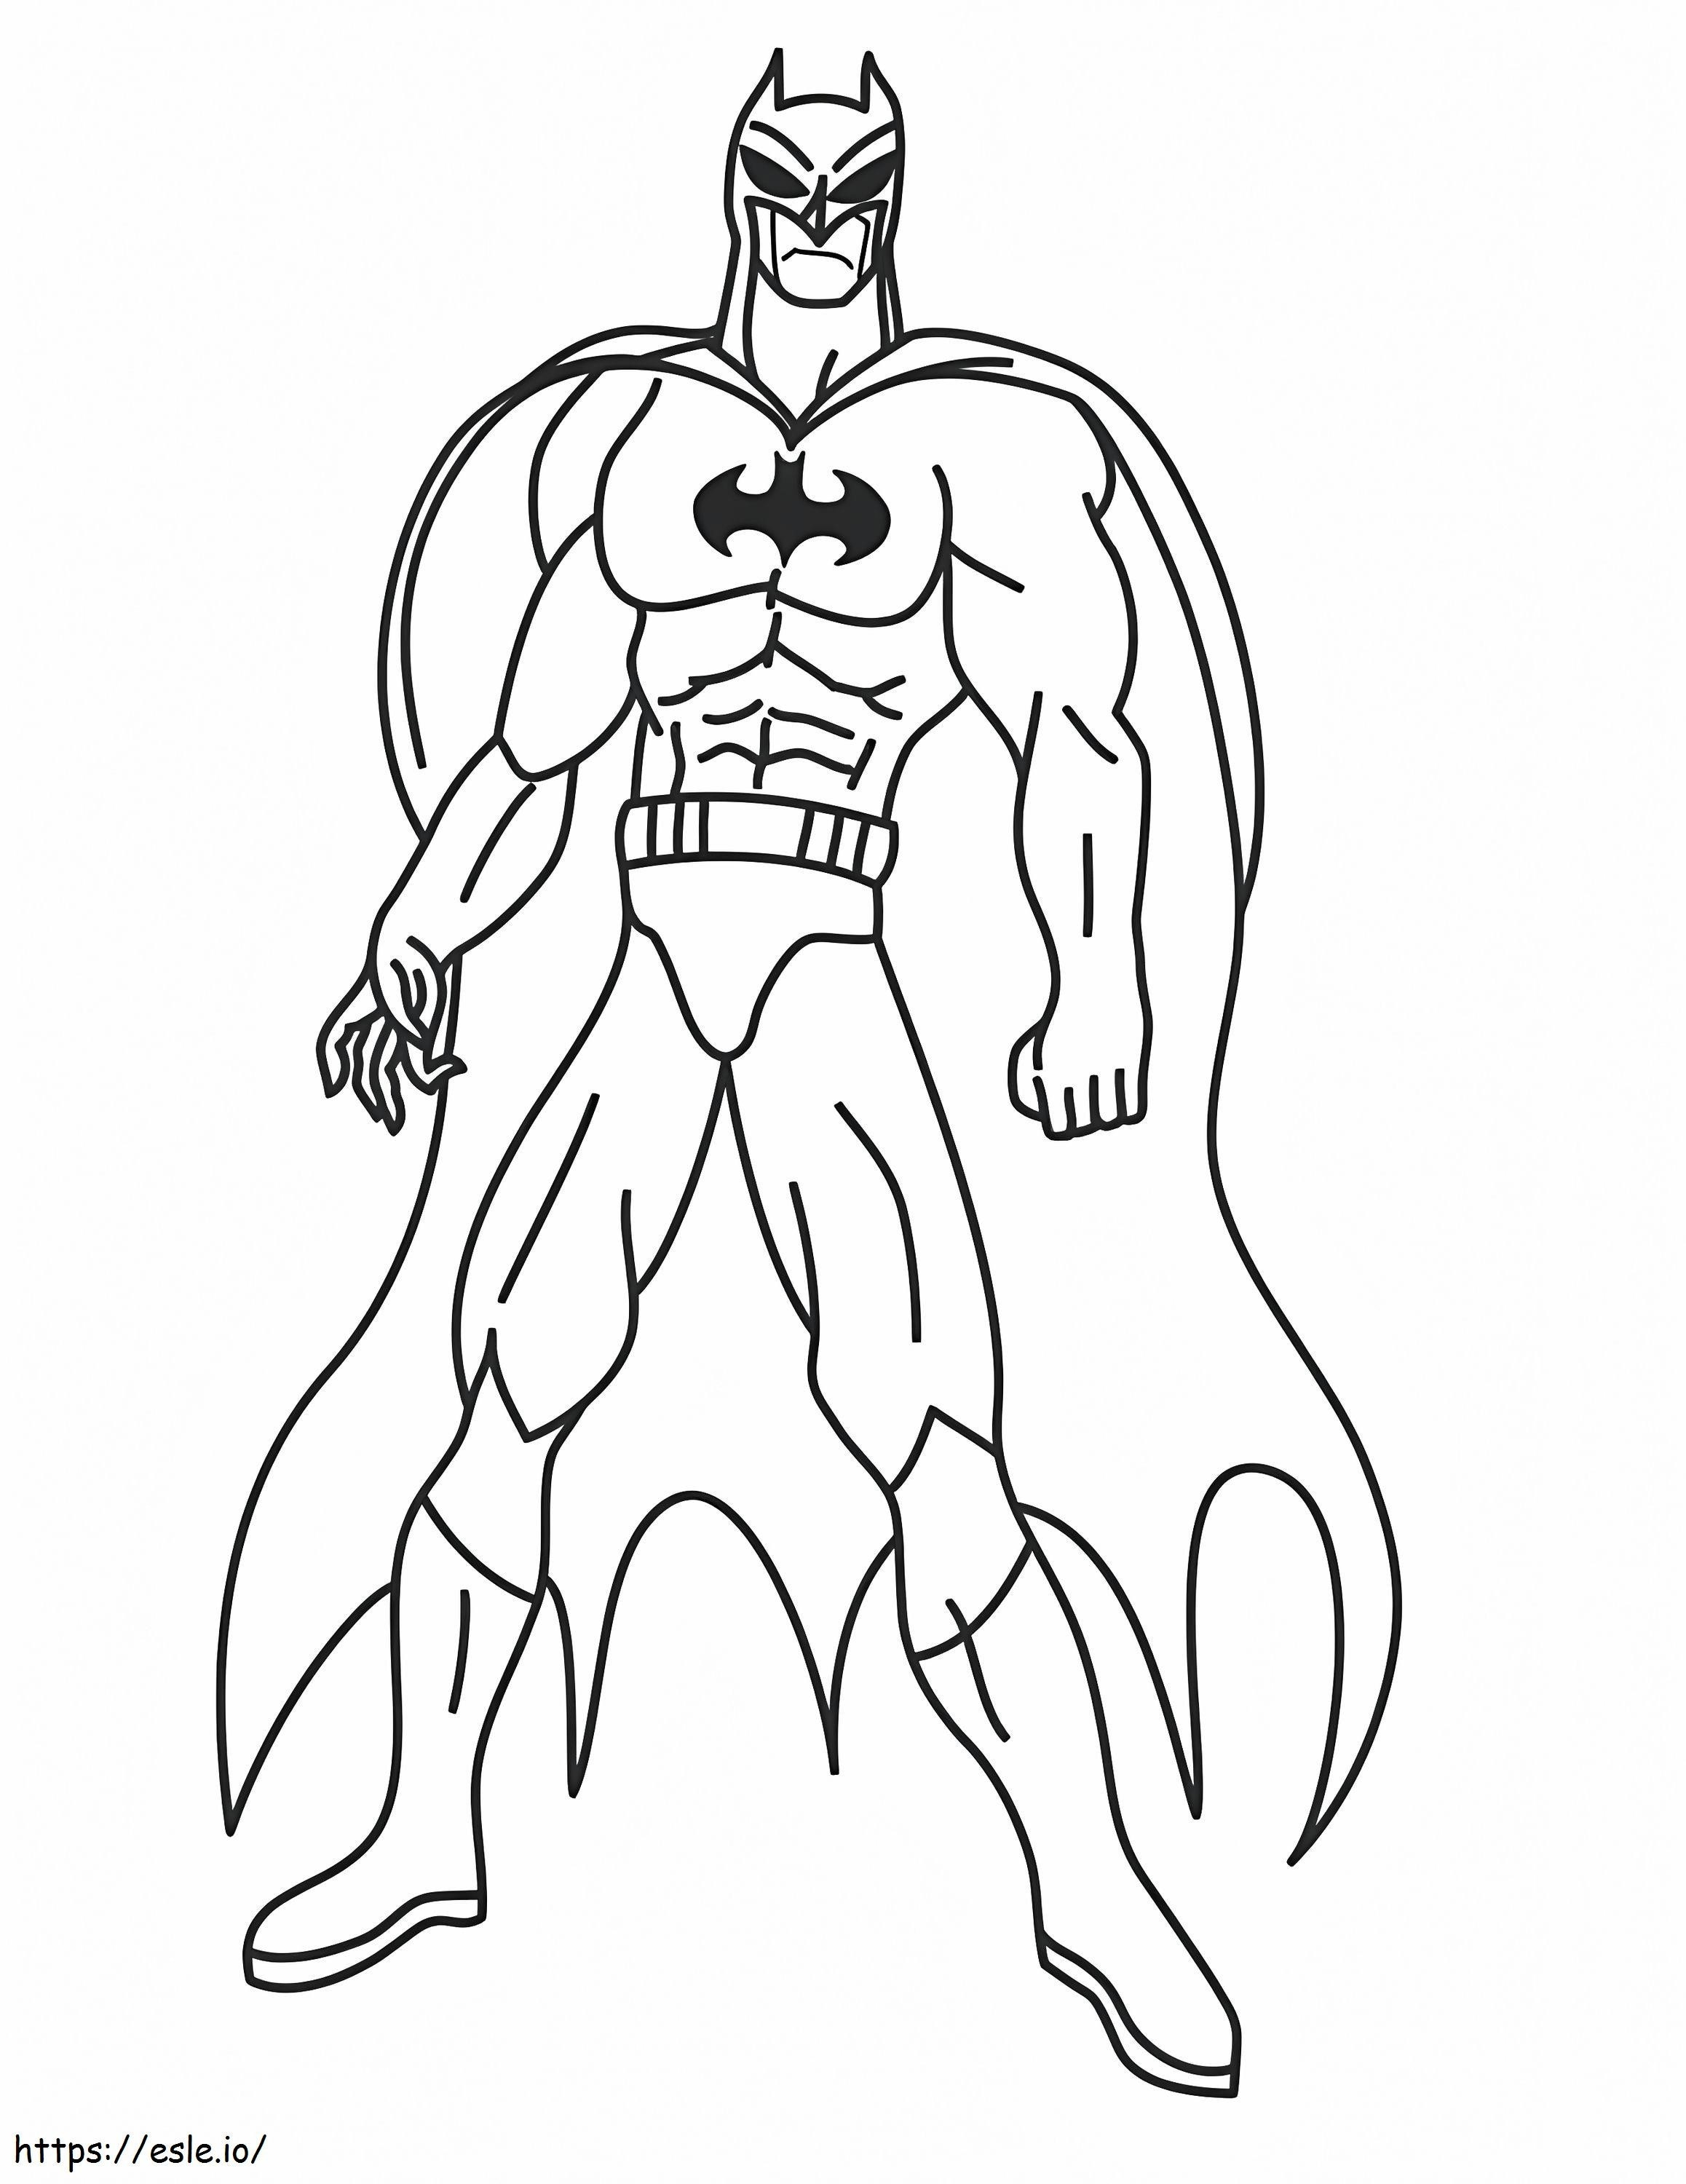 Batman semplice da colorare